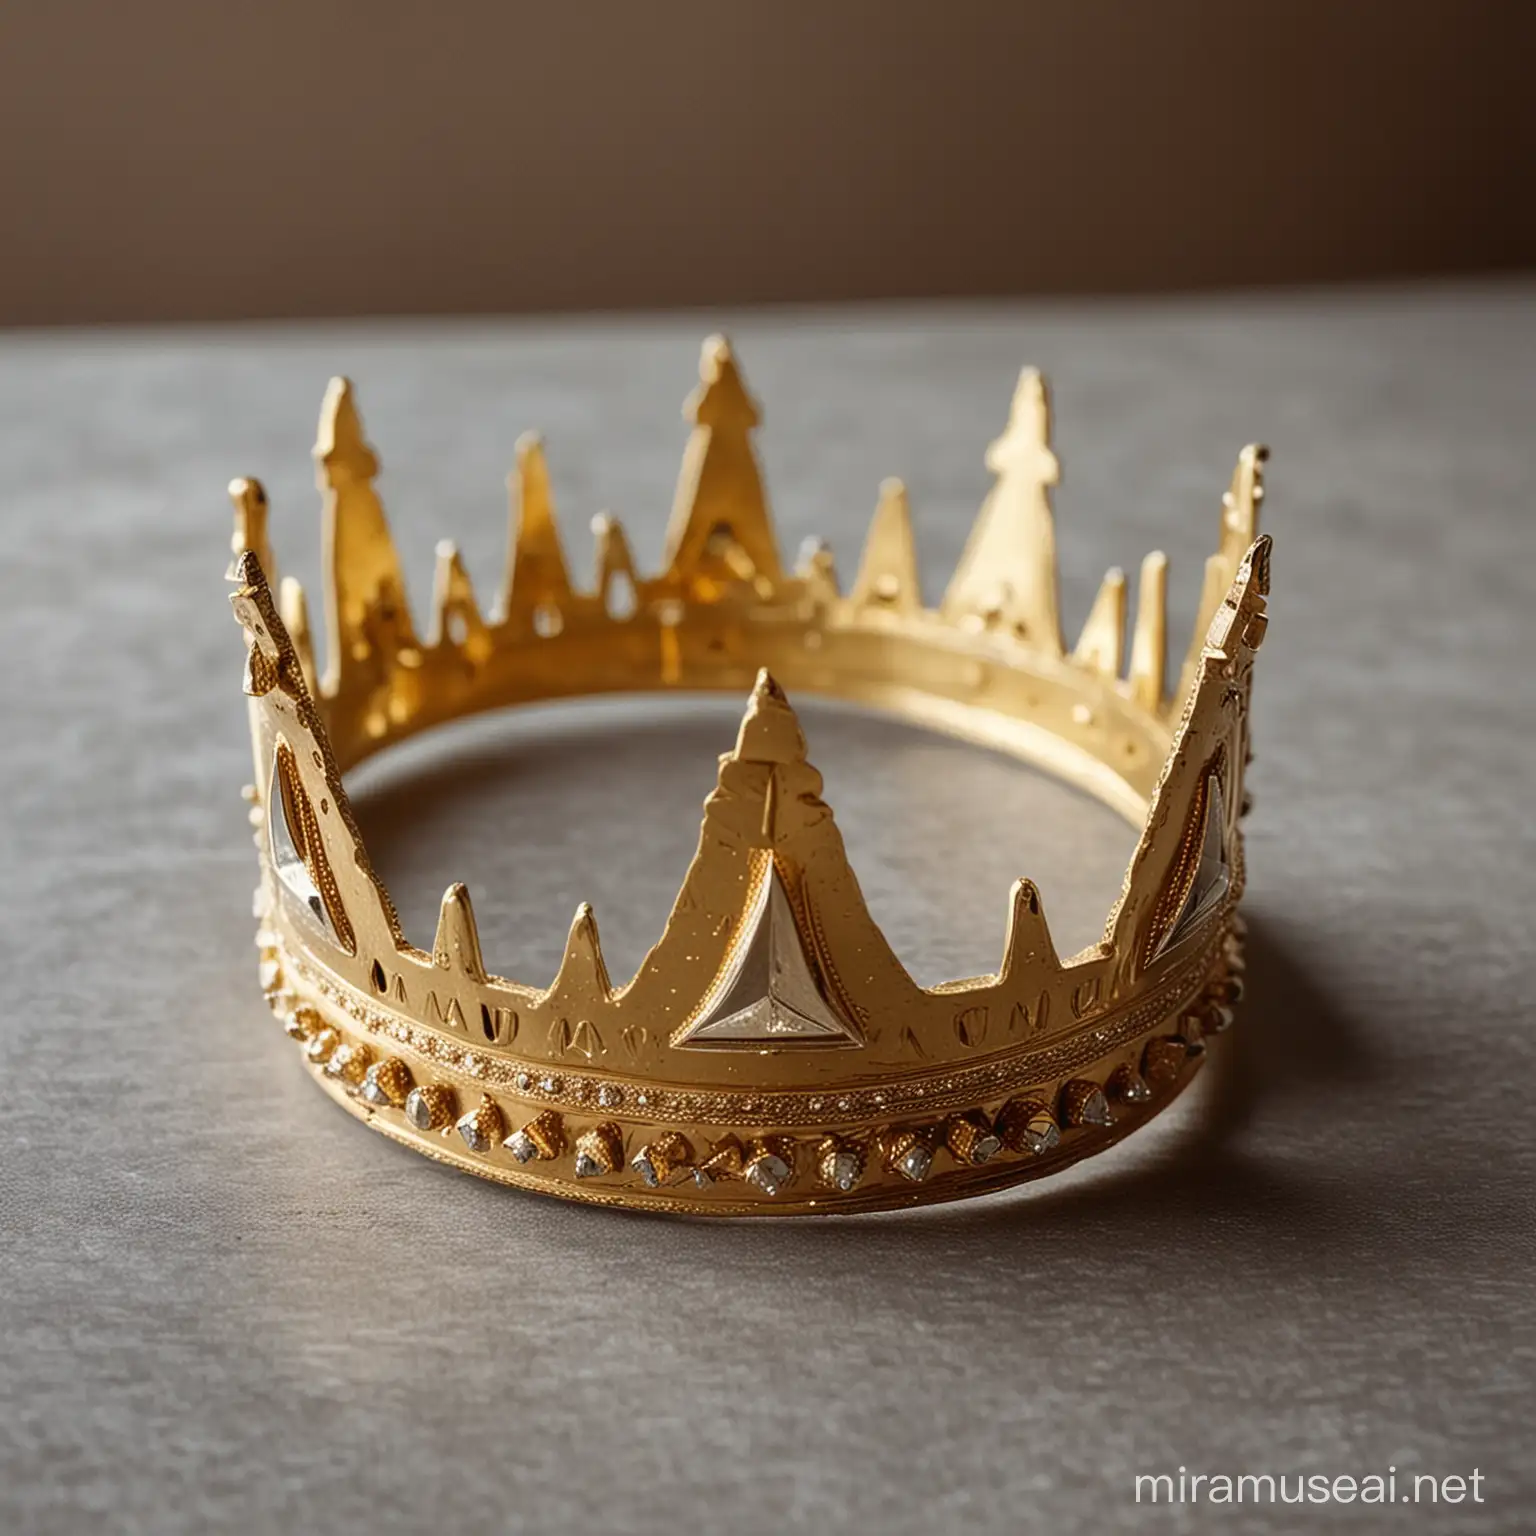 Проста але дуже красива золота корона з трикутними пласкими зубцями лежить на столі.
